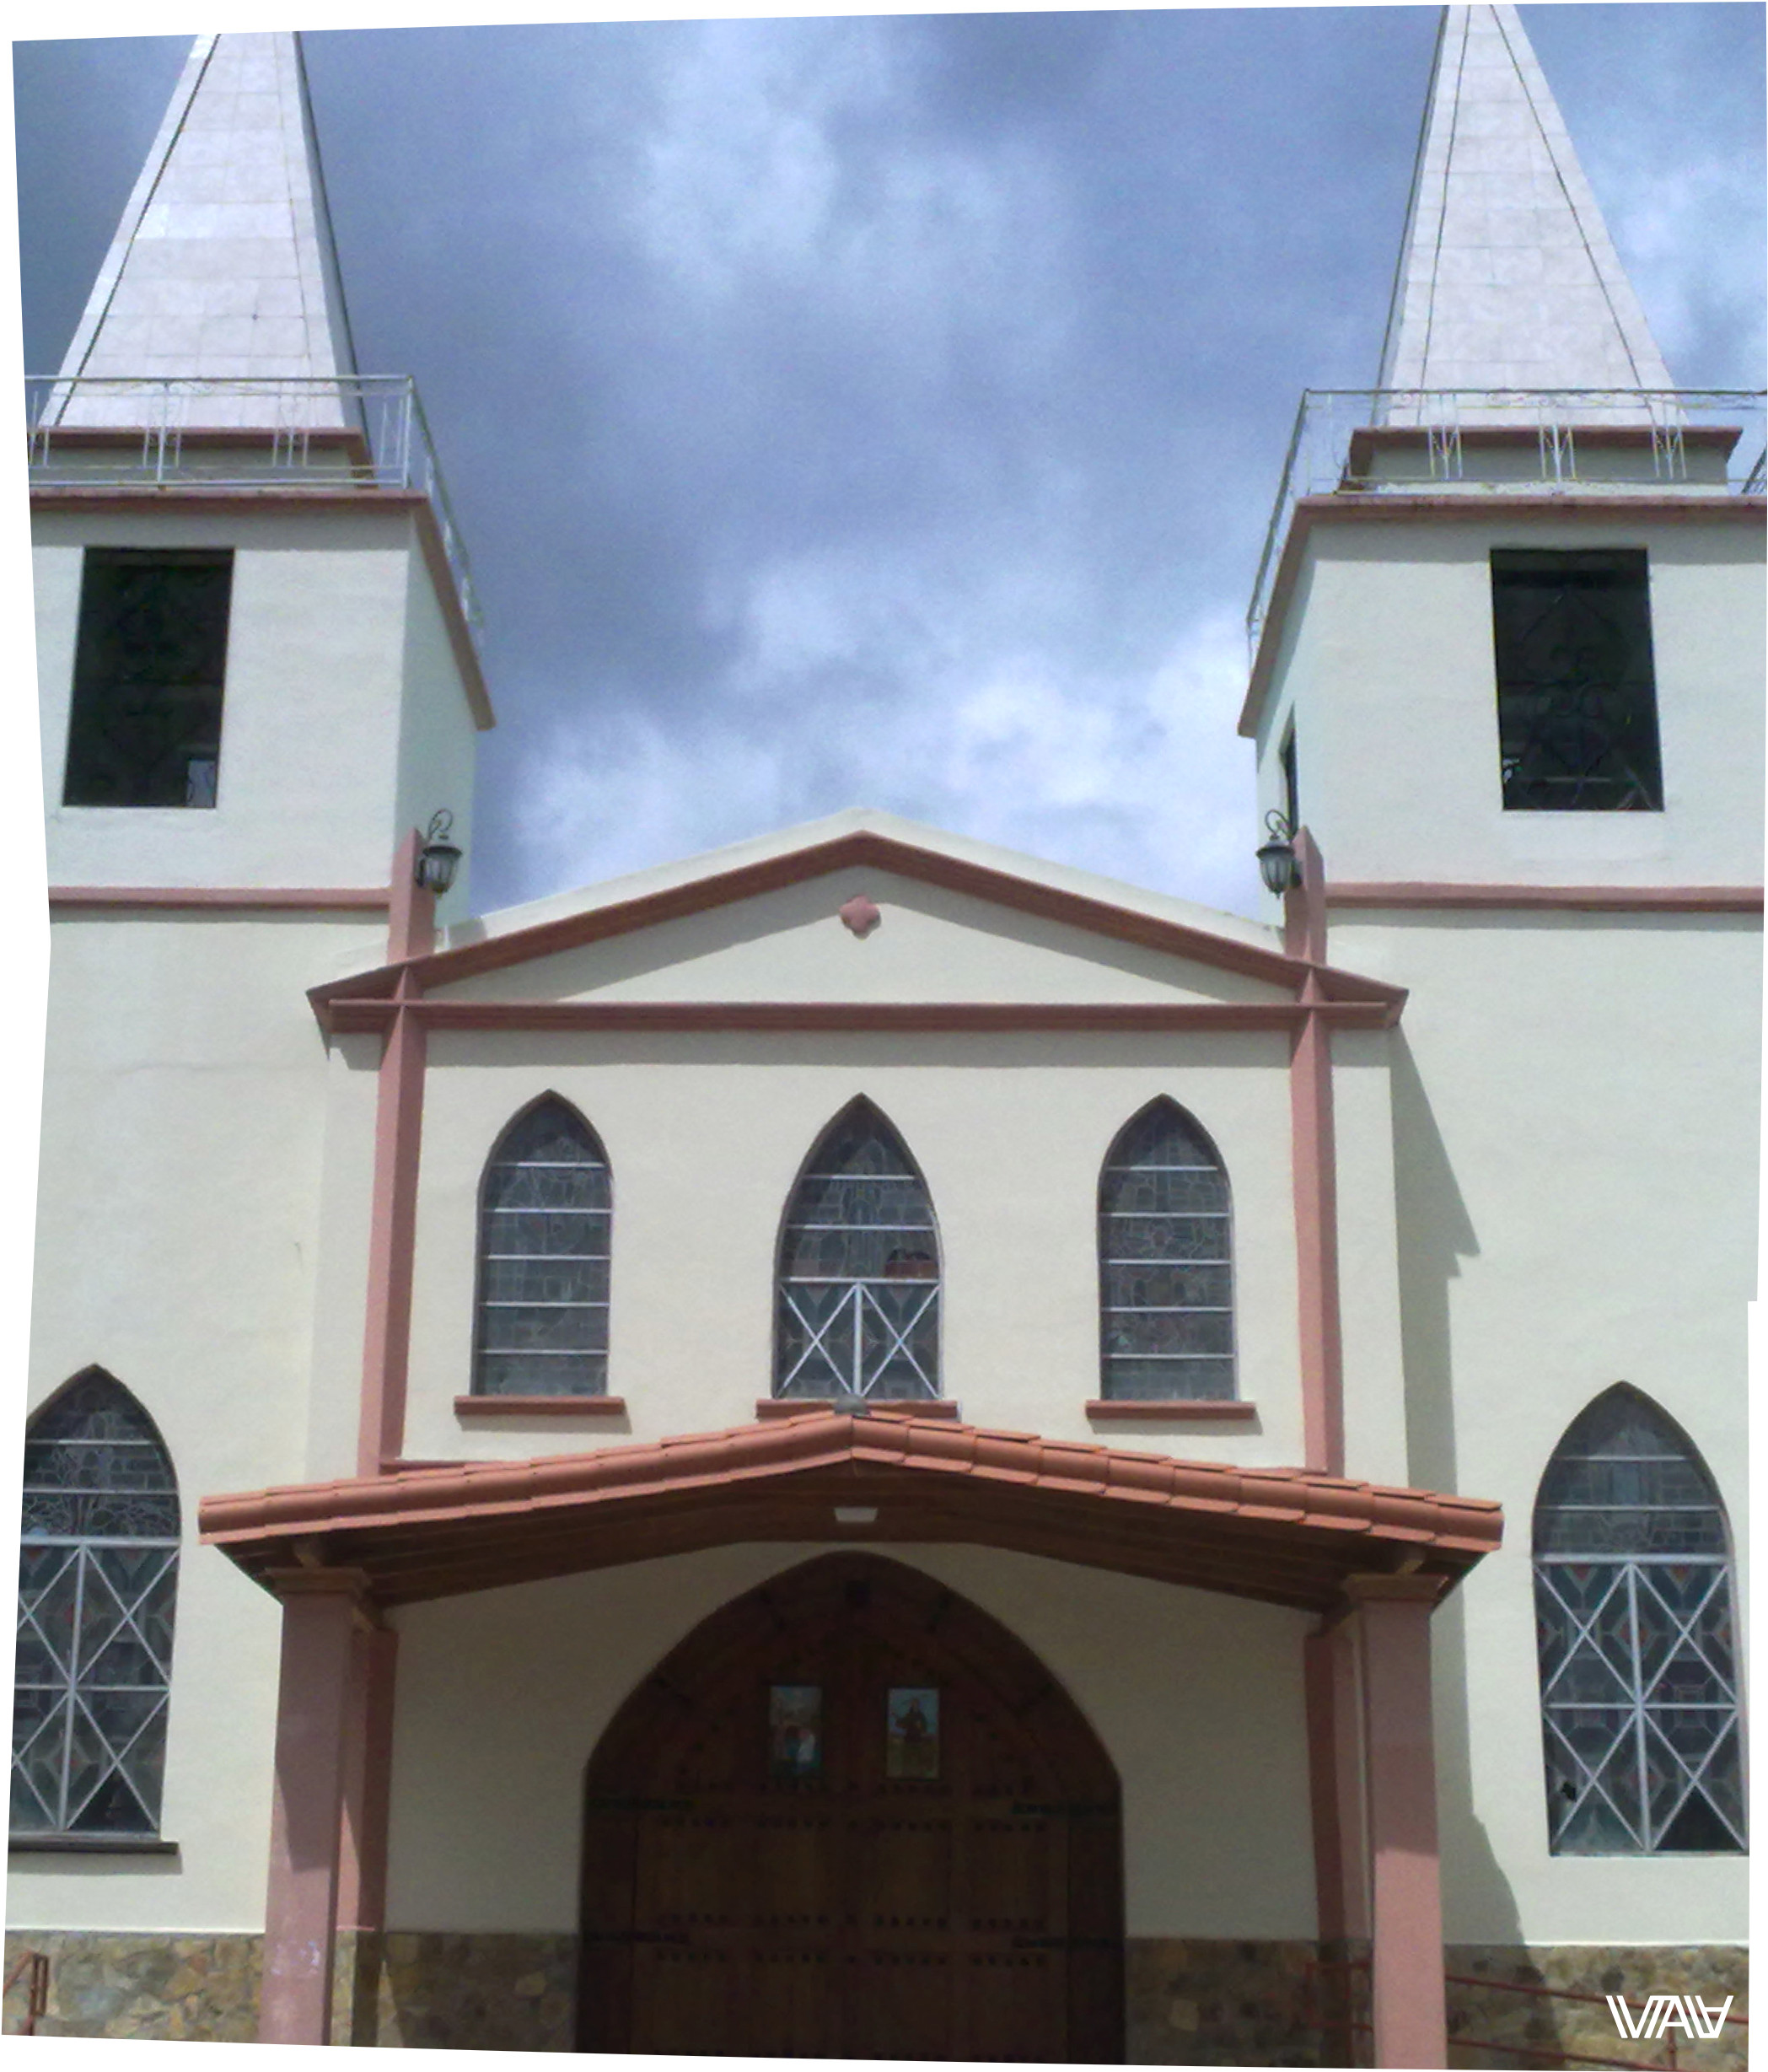 Interesting architecture of the local church. Bajo Boquete, Panama